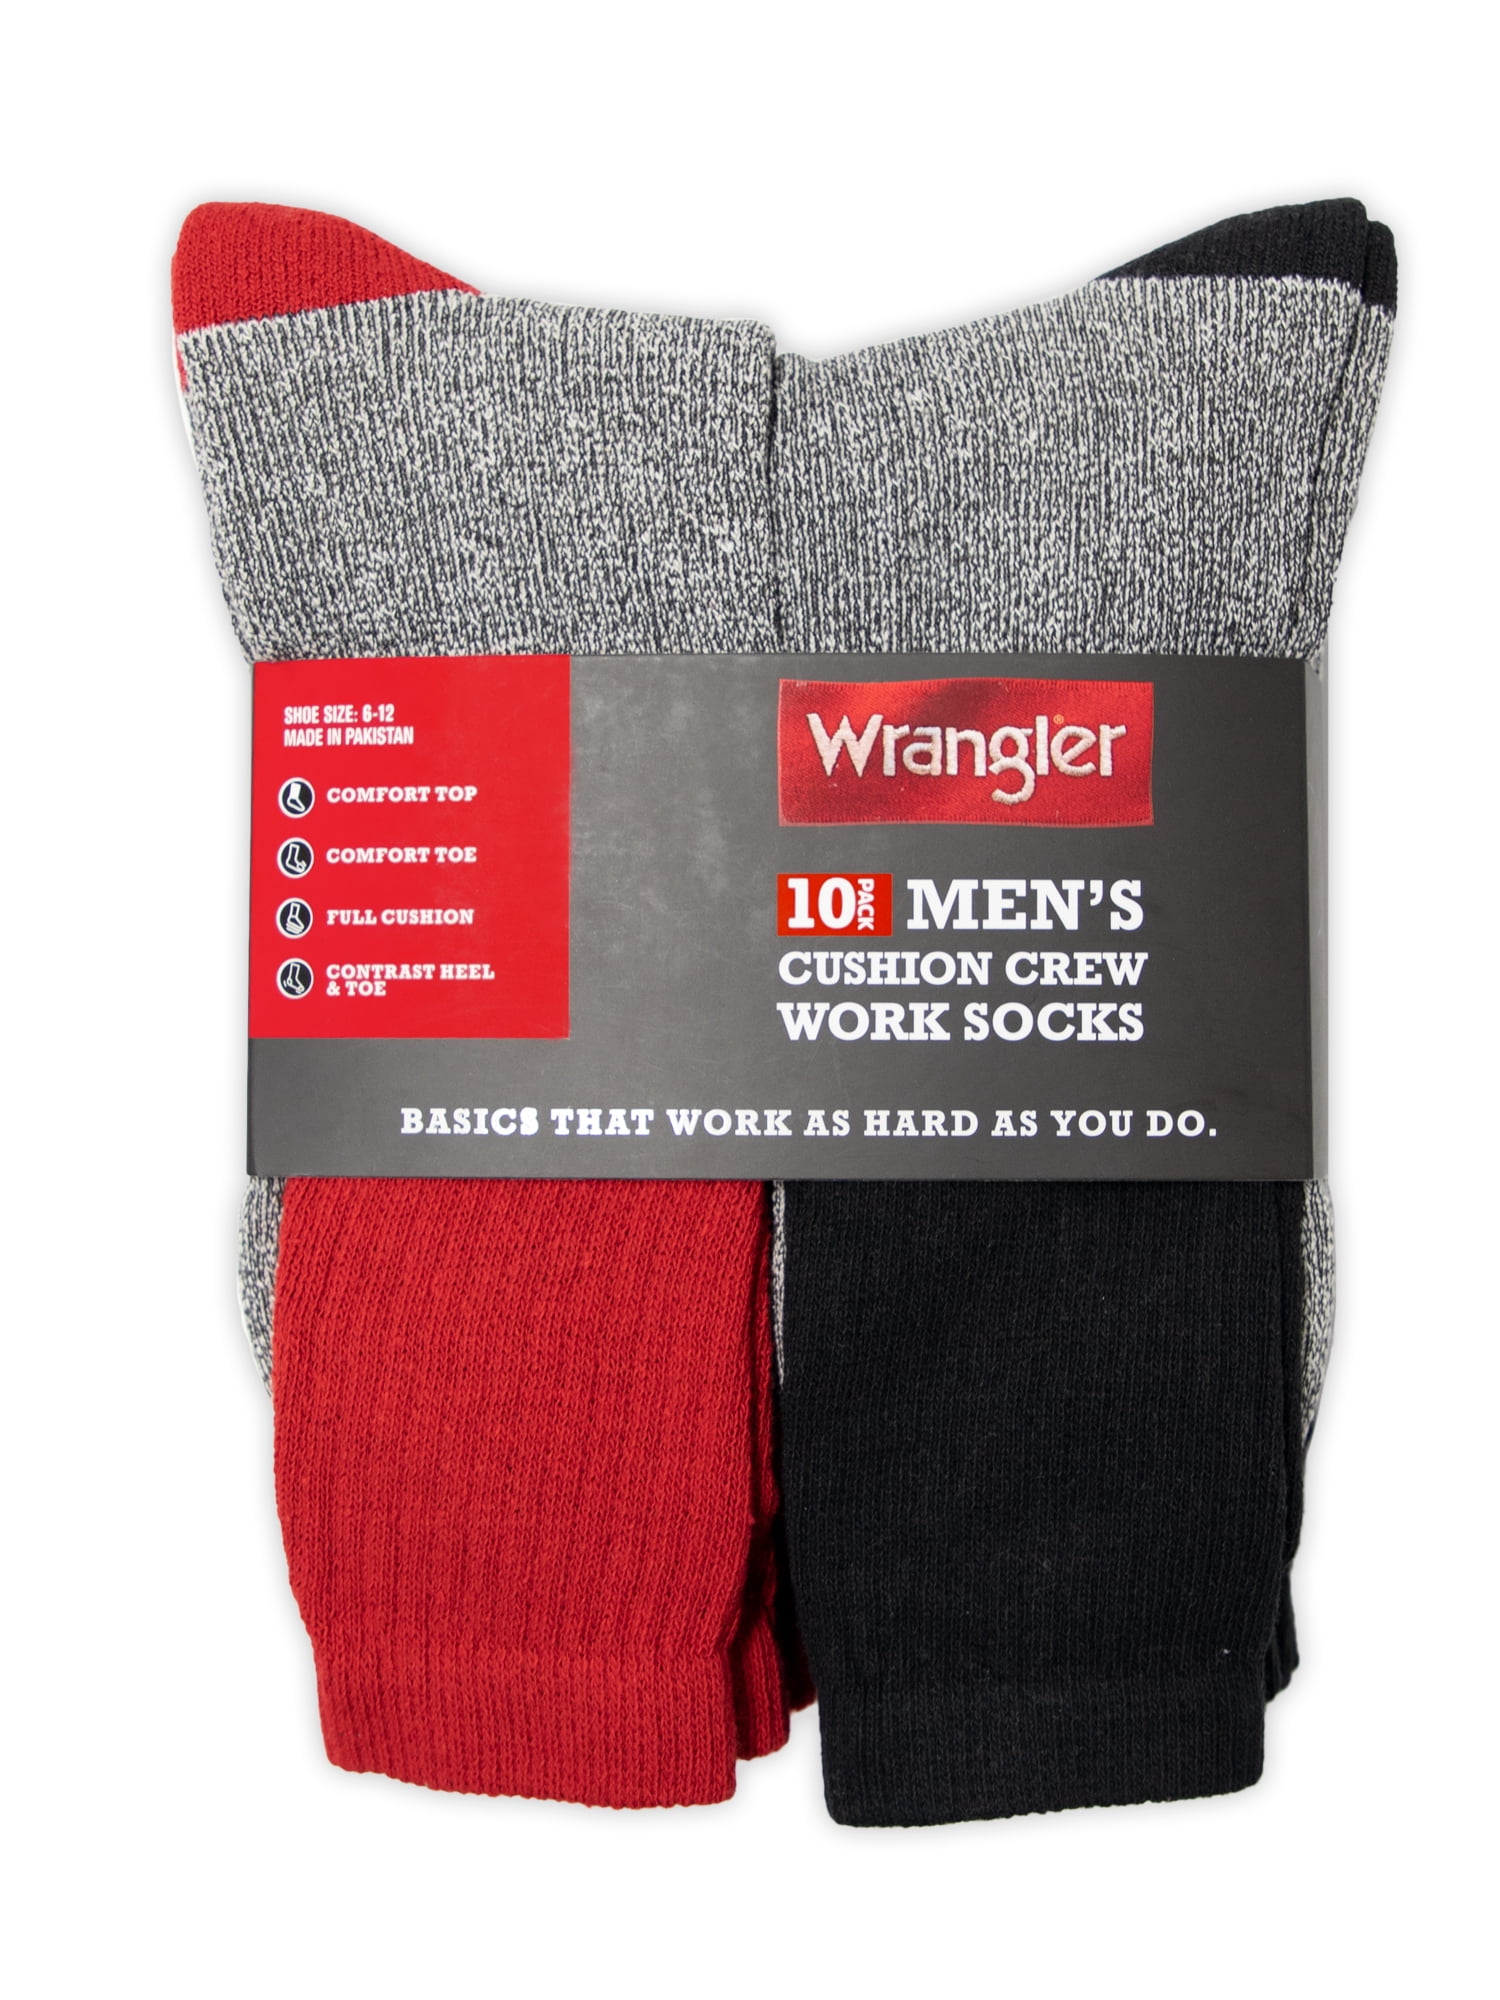 Wrangler Men's Heavy Boot Socks, 10 Pair